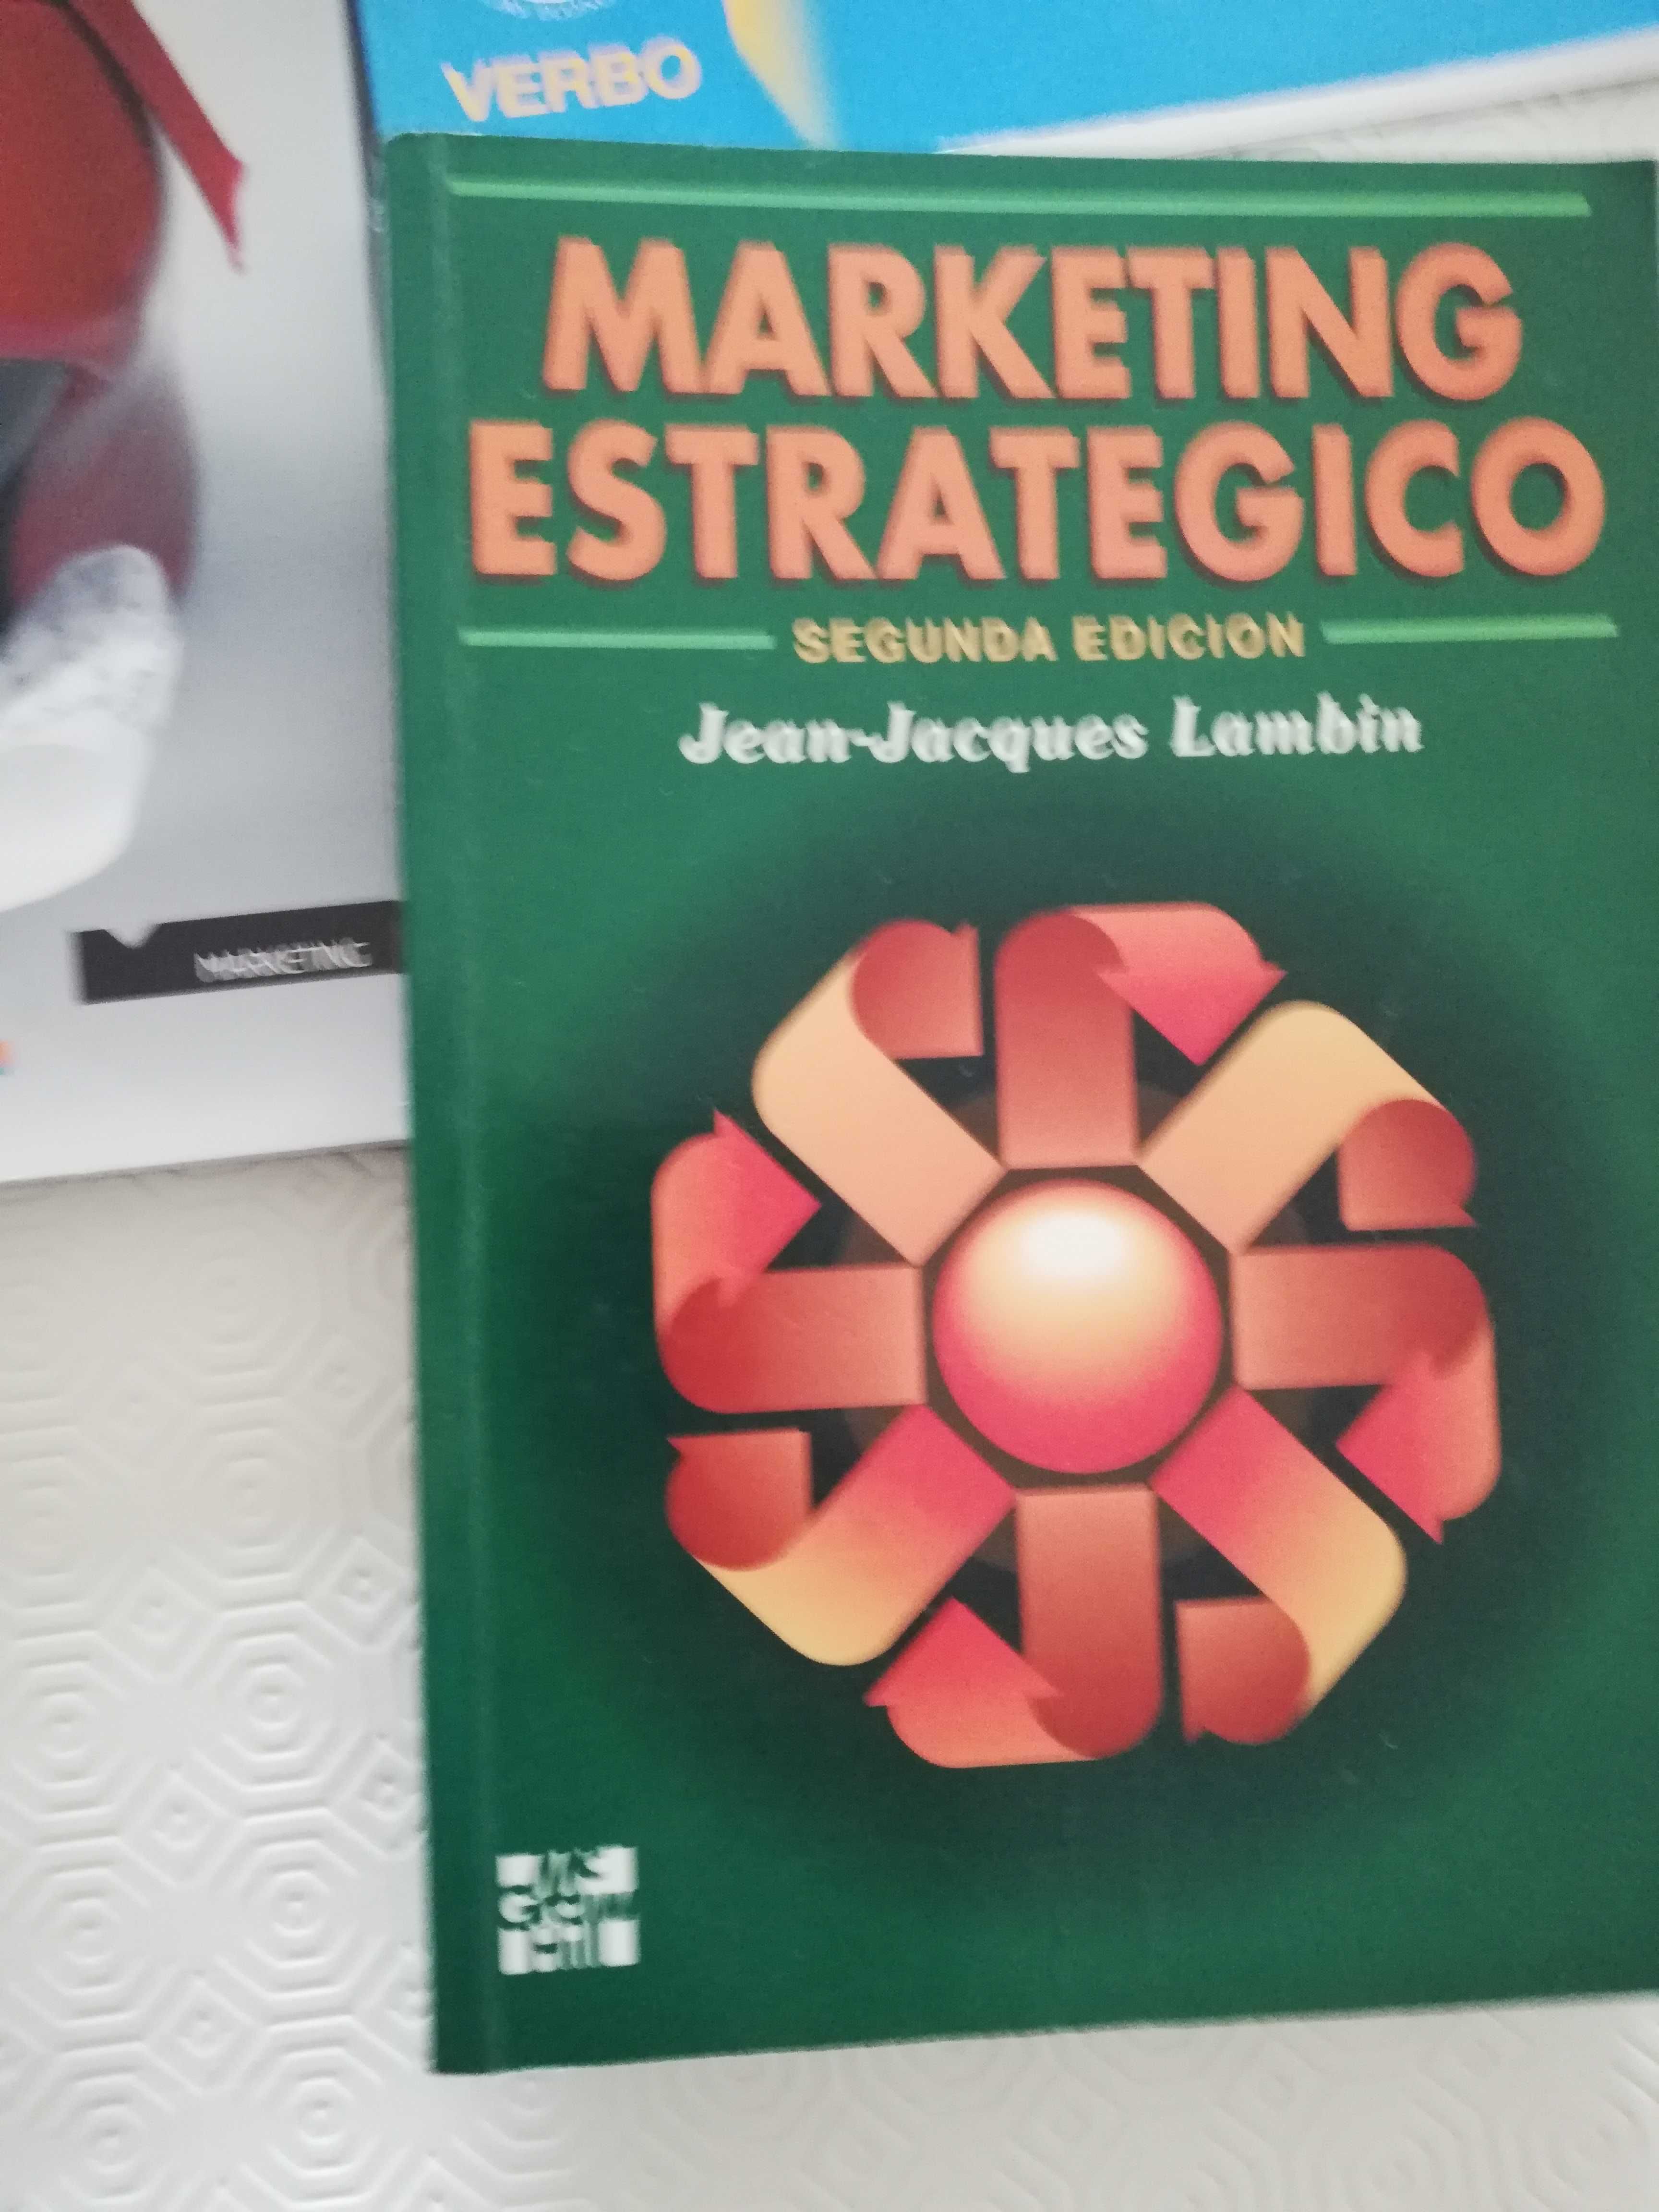 Livros de Marketing e Publicidade